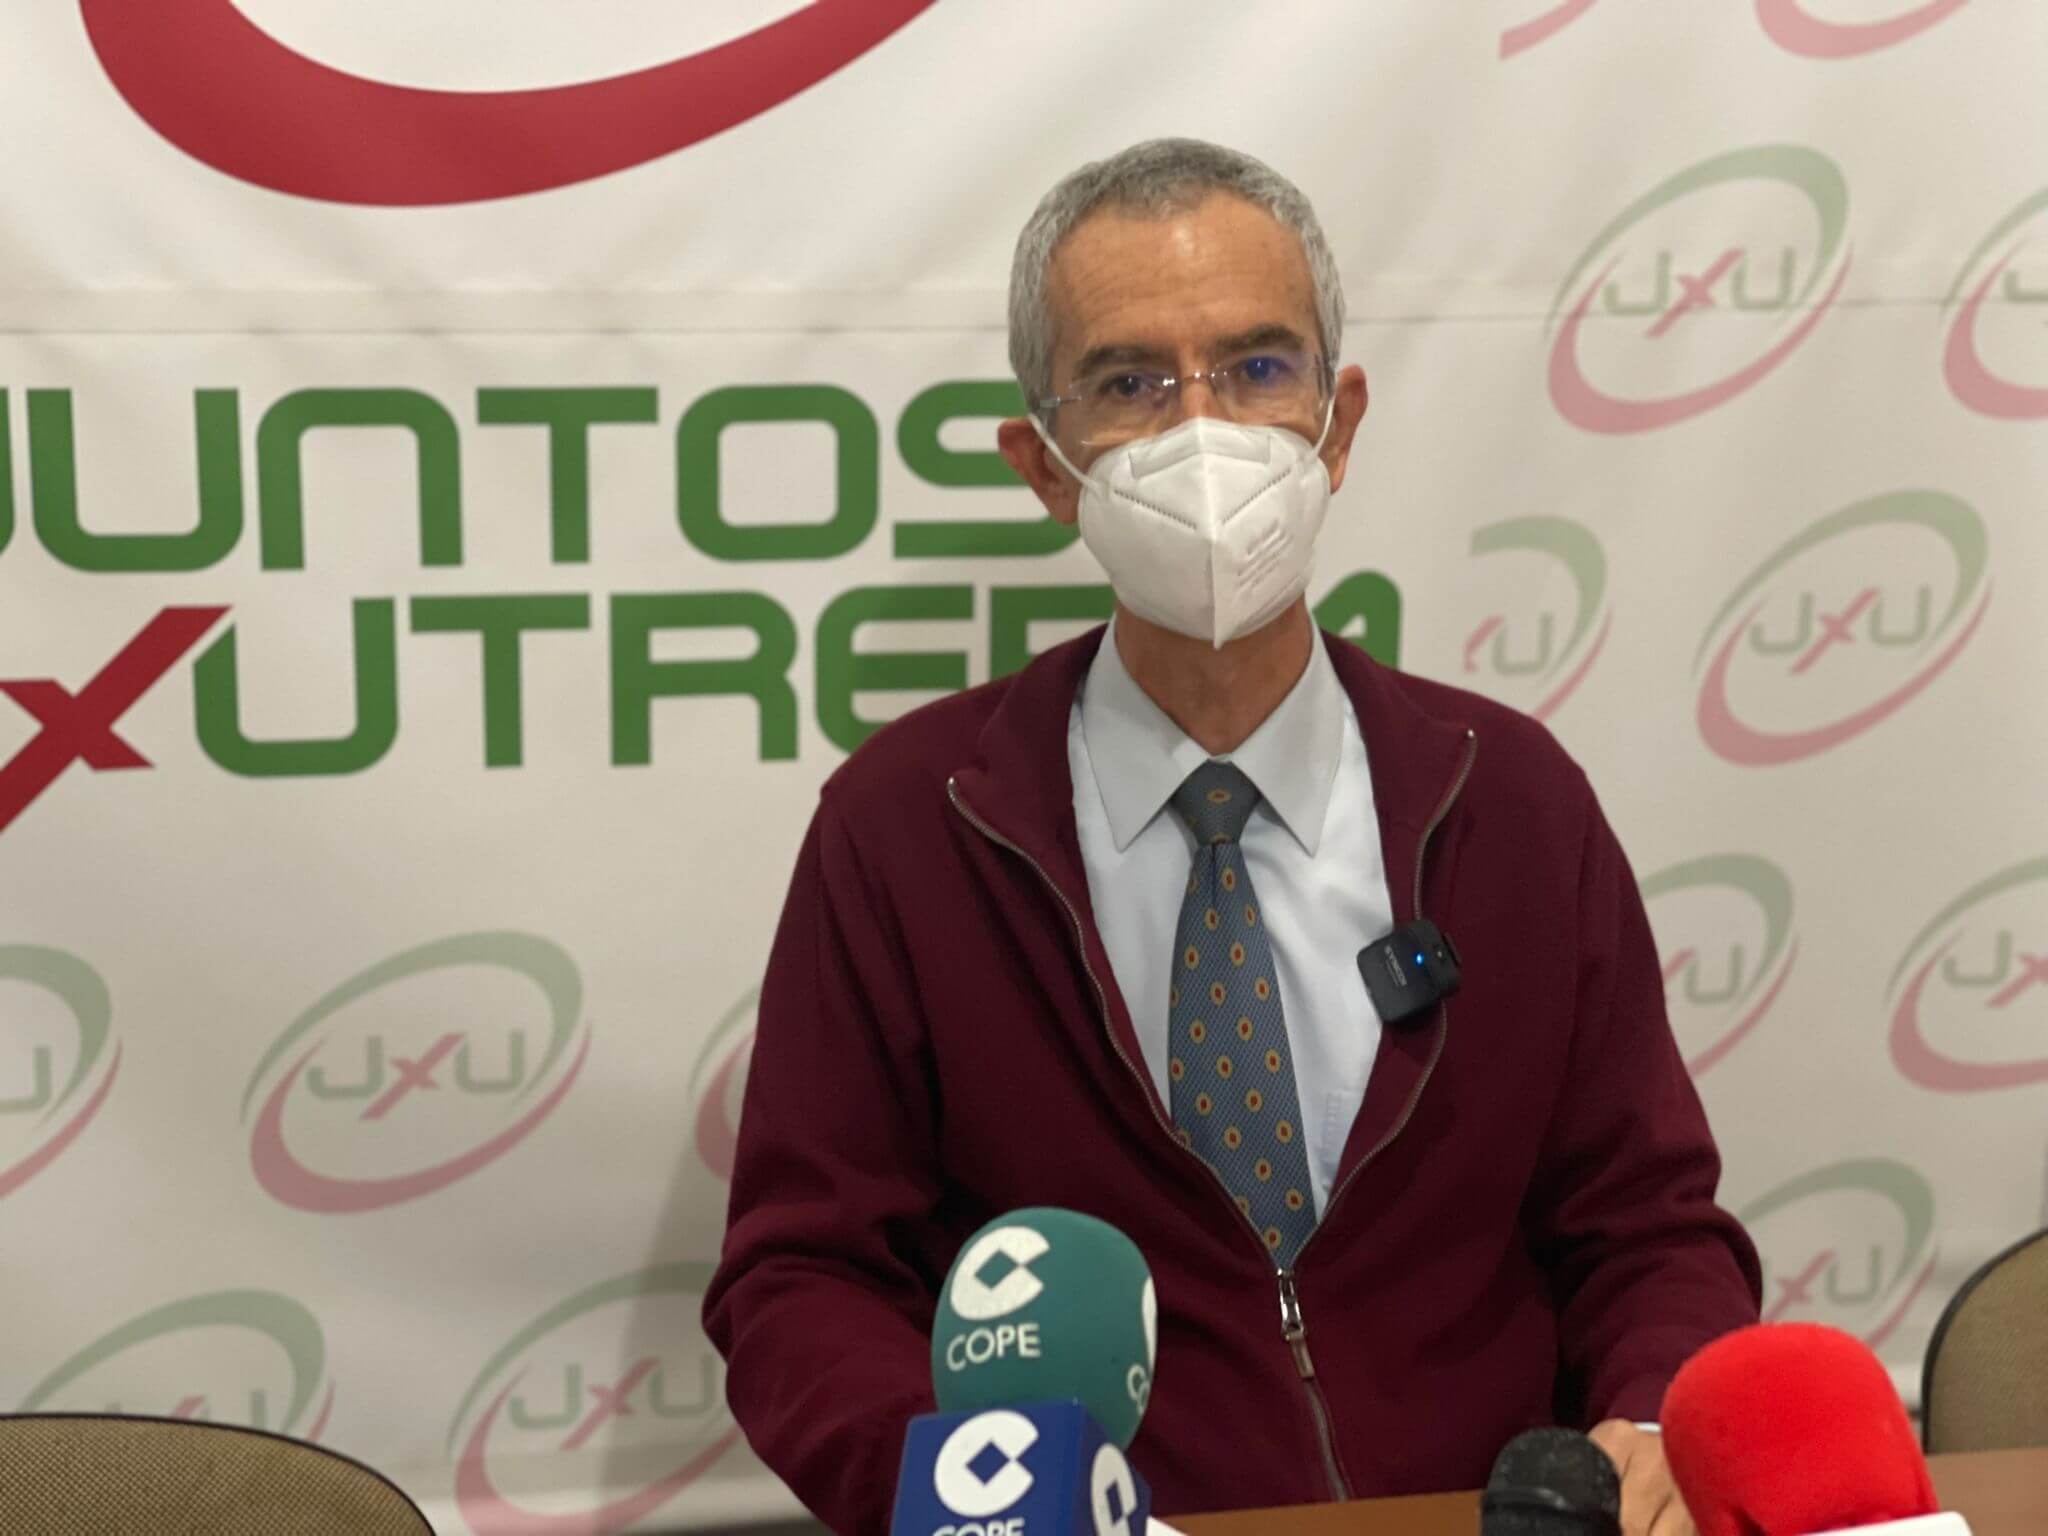 Juntos x Utrera denuncia el retraso del pago de facturas por parte del Ayuntamiento